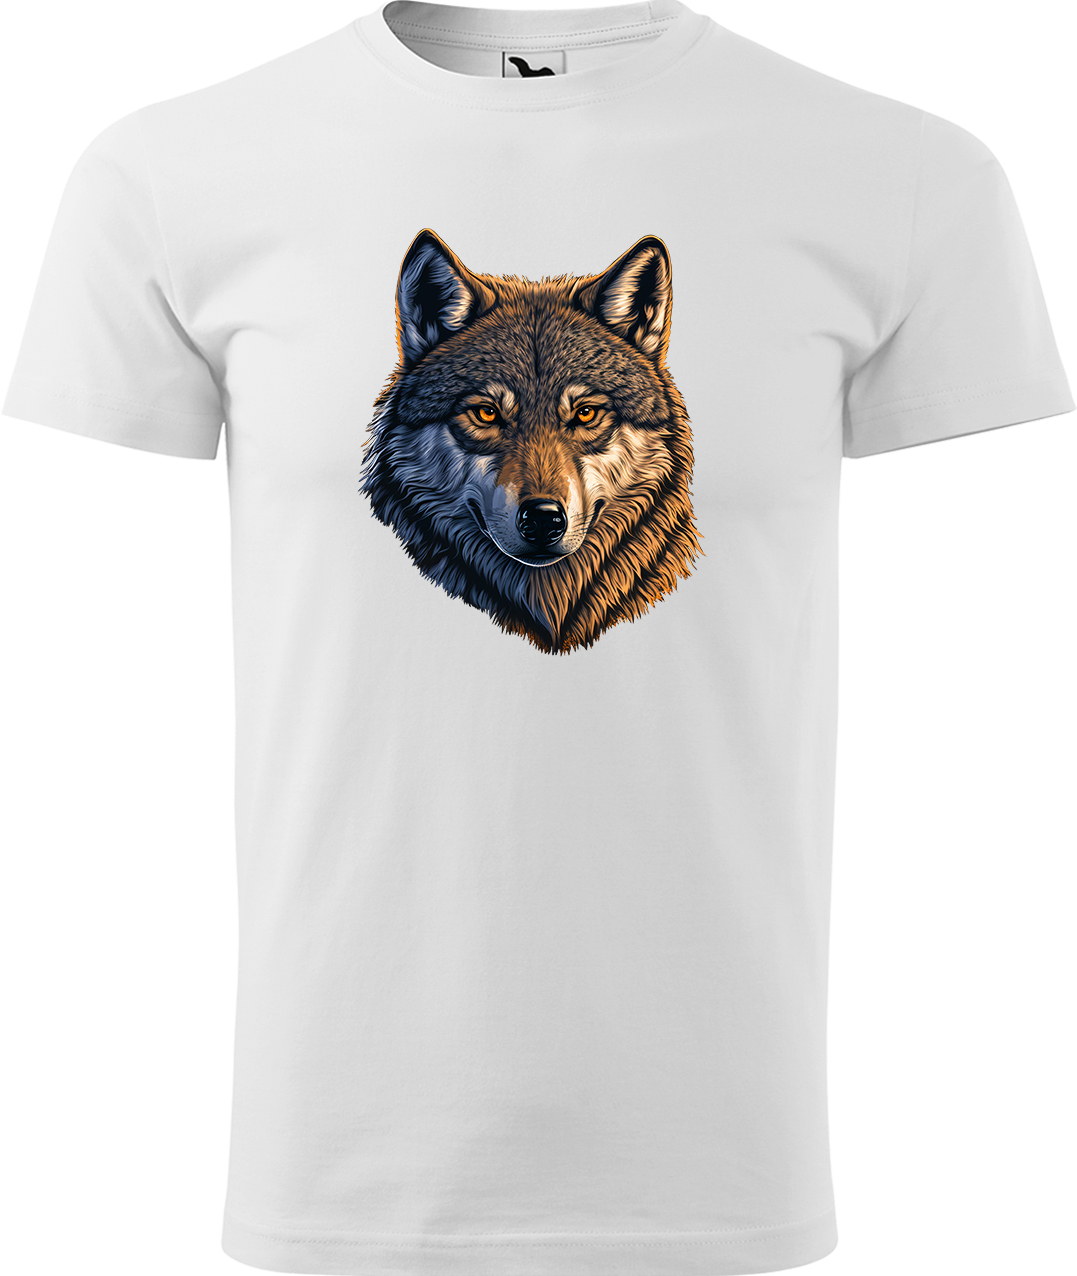 Pánské tričko s vlkem - Hlava vlka Velikost: S, Barva: Bílá (00), Střih: pánský